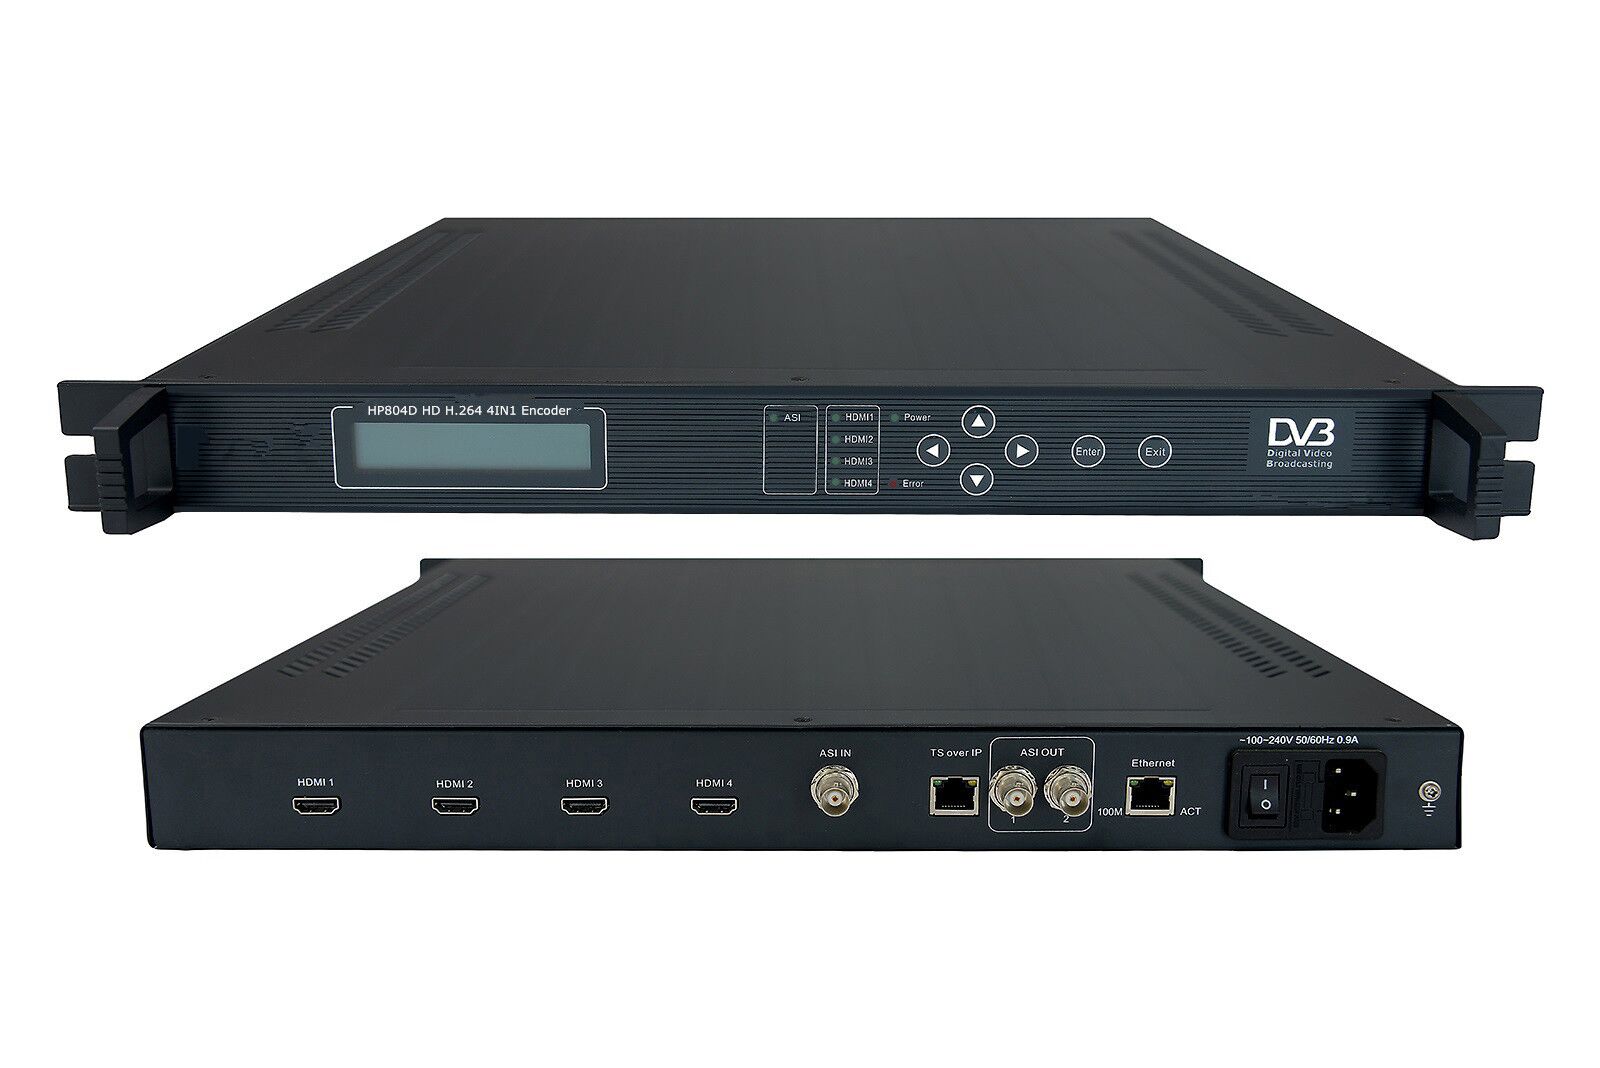 Codificador HDMI HP804D 4 en 1 H. 264 con 4 entradas HDMI y salida IP